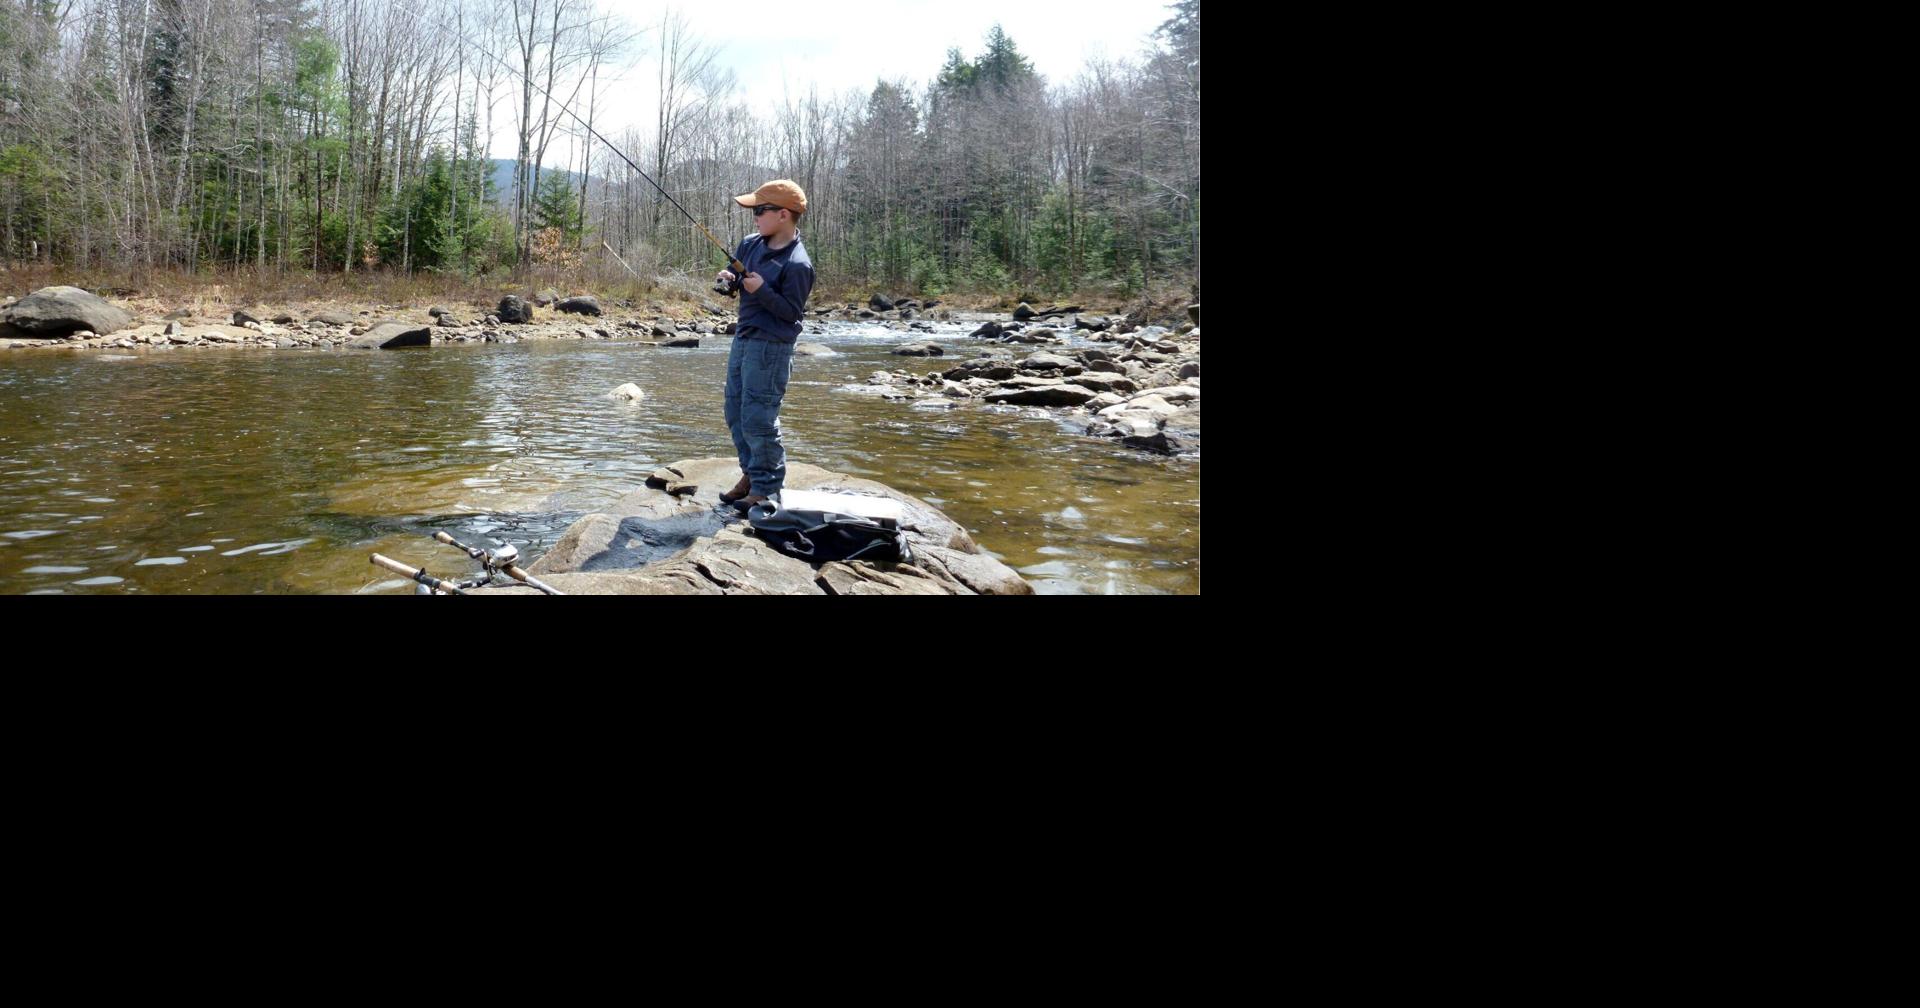 Vermont trout season opens April 8 Outdoors